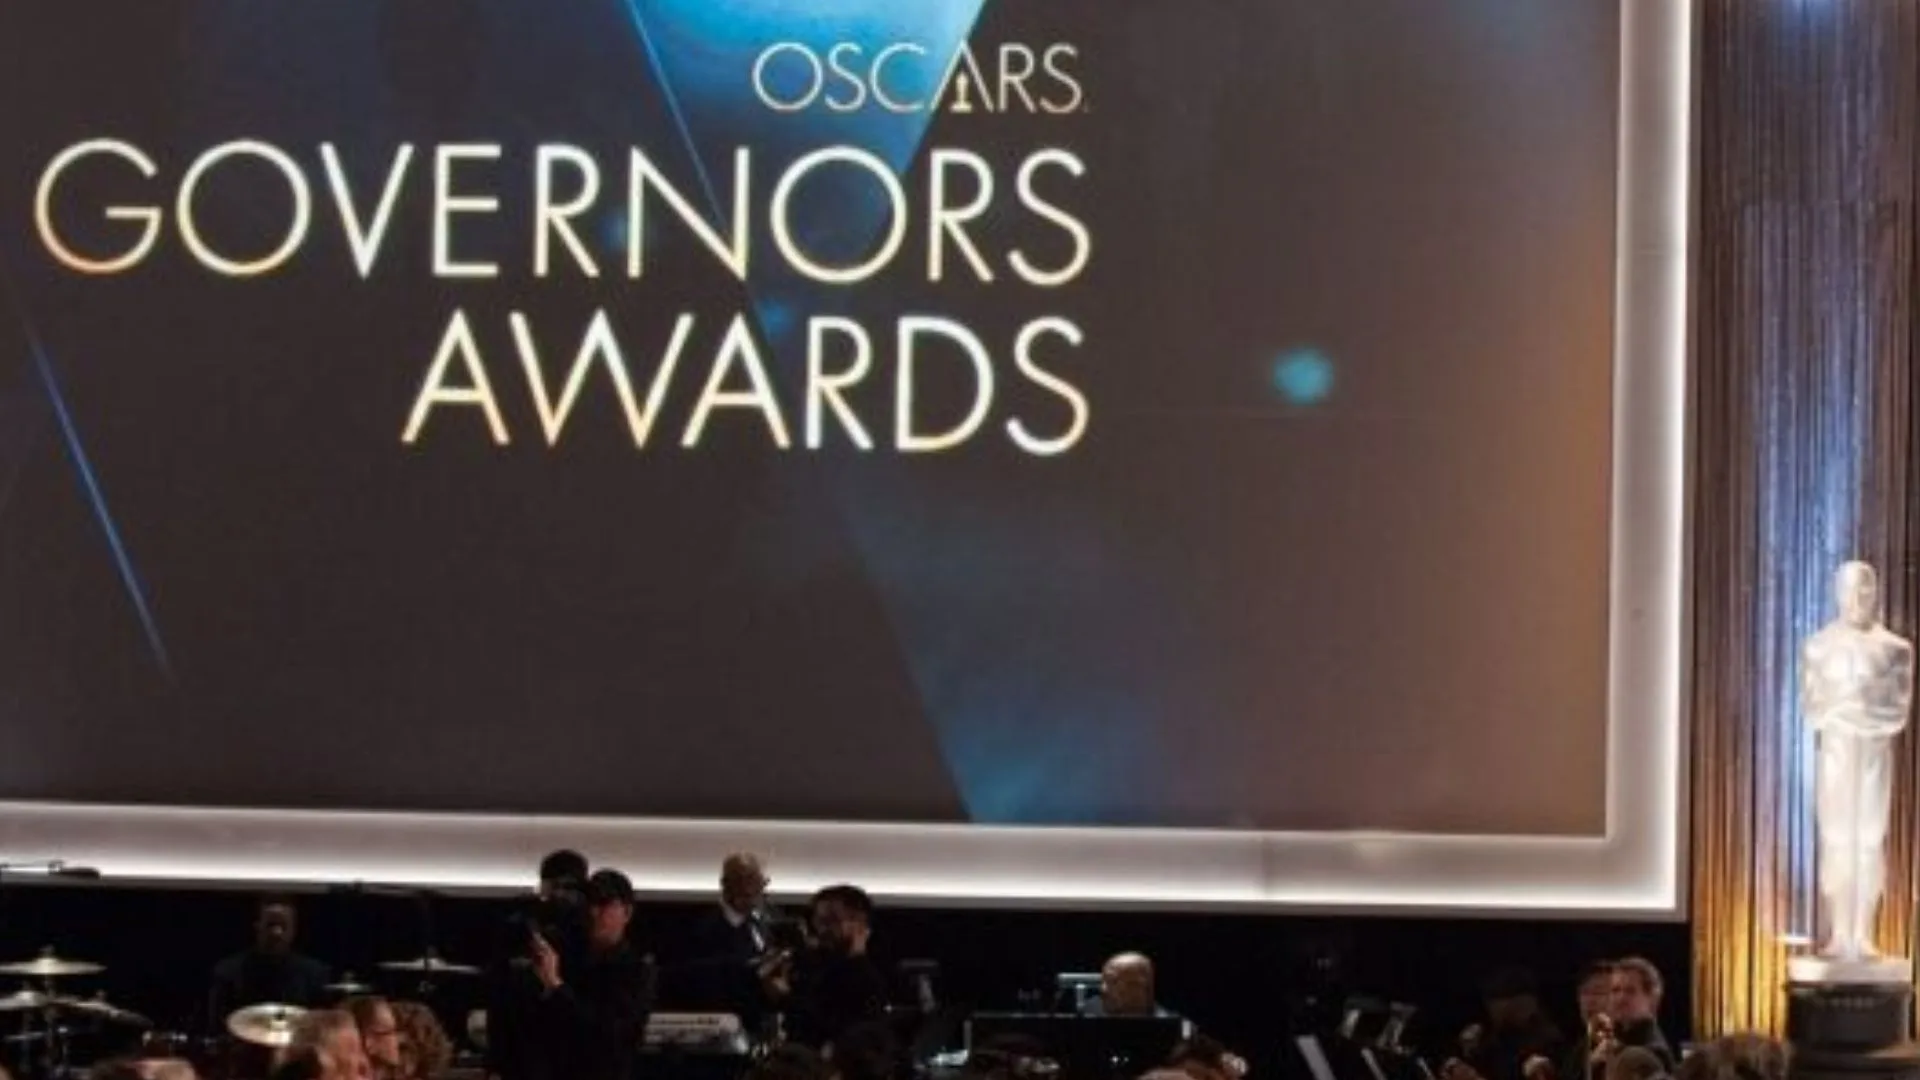 Los Premios de los Gobernadores son Oscar honoríficos, y se llaman así porque los otorga la Junta de Gobernadores de la Academia. 